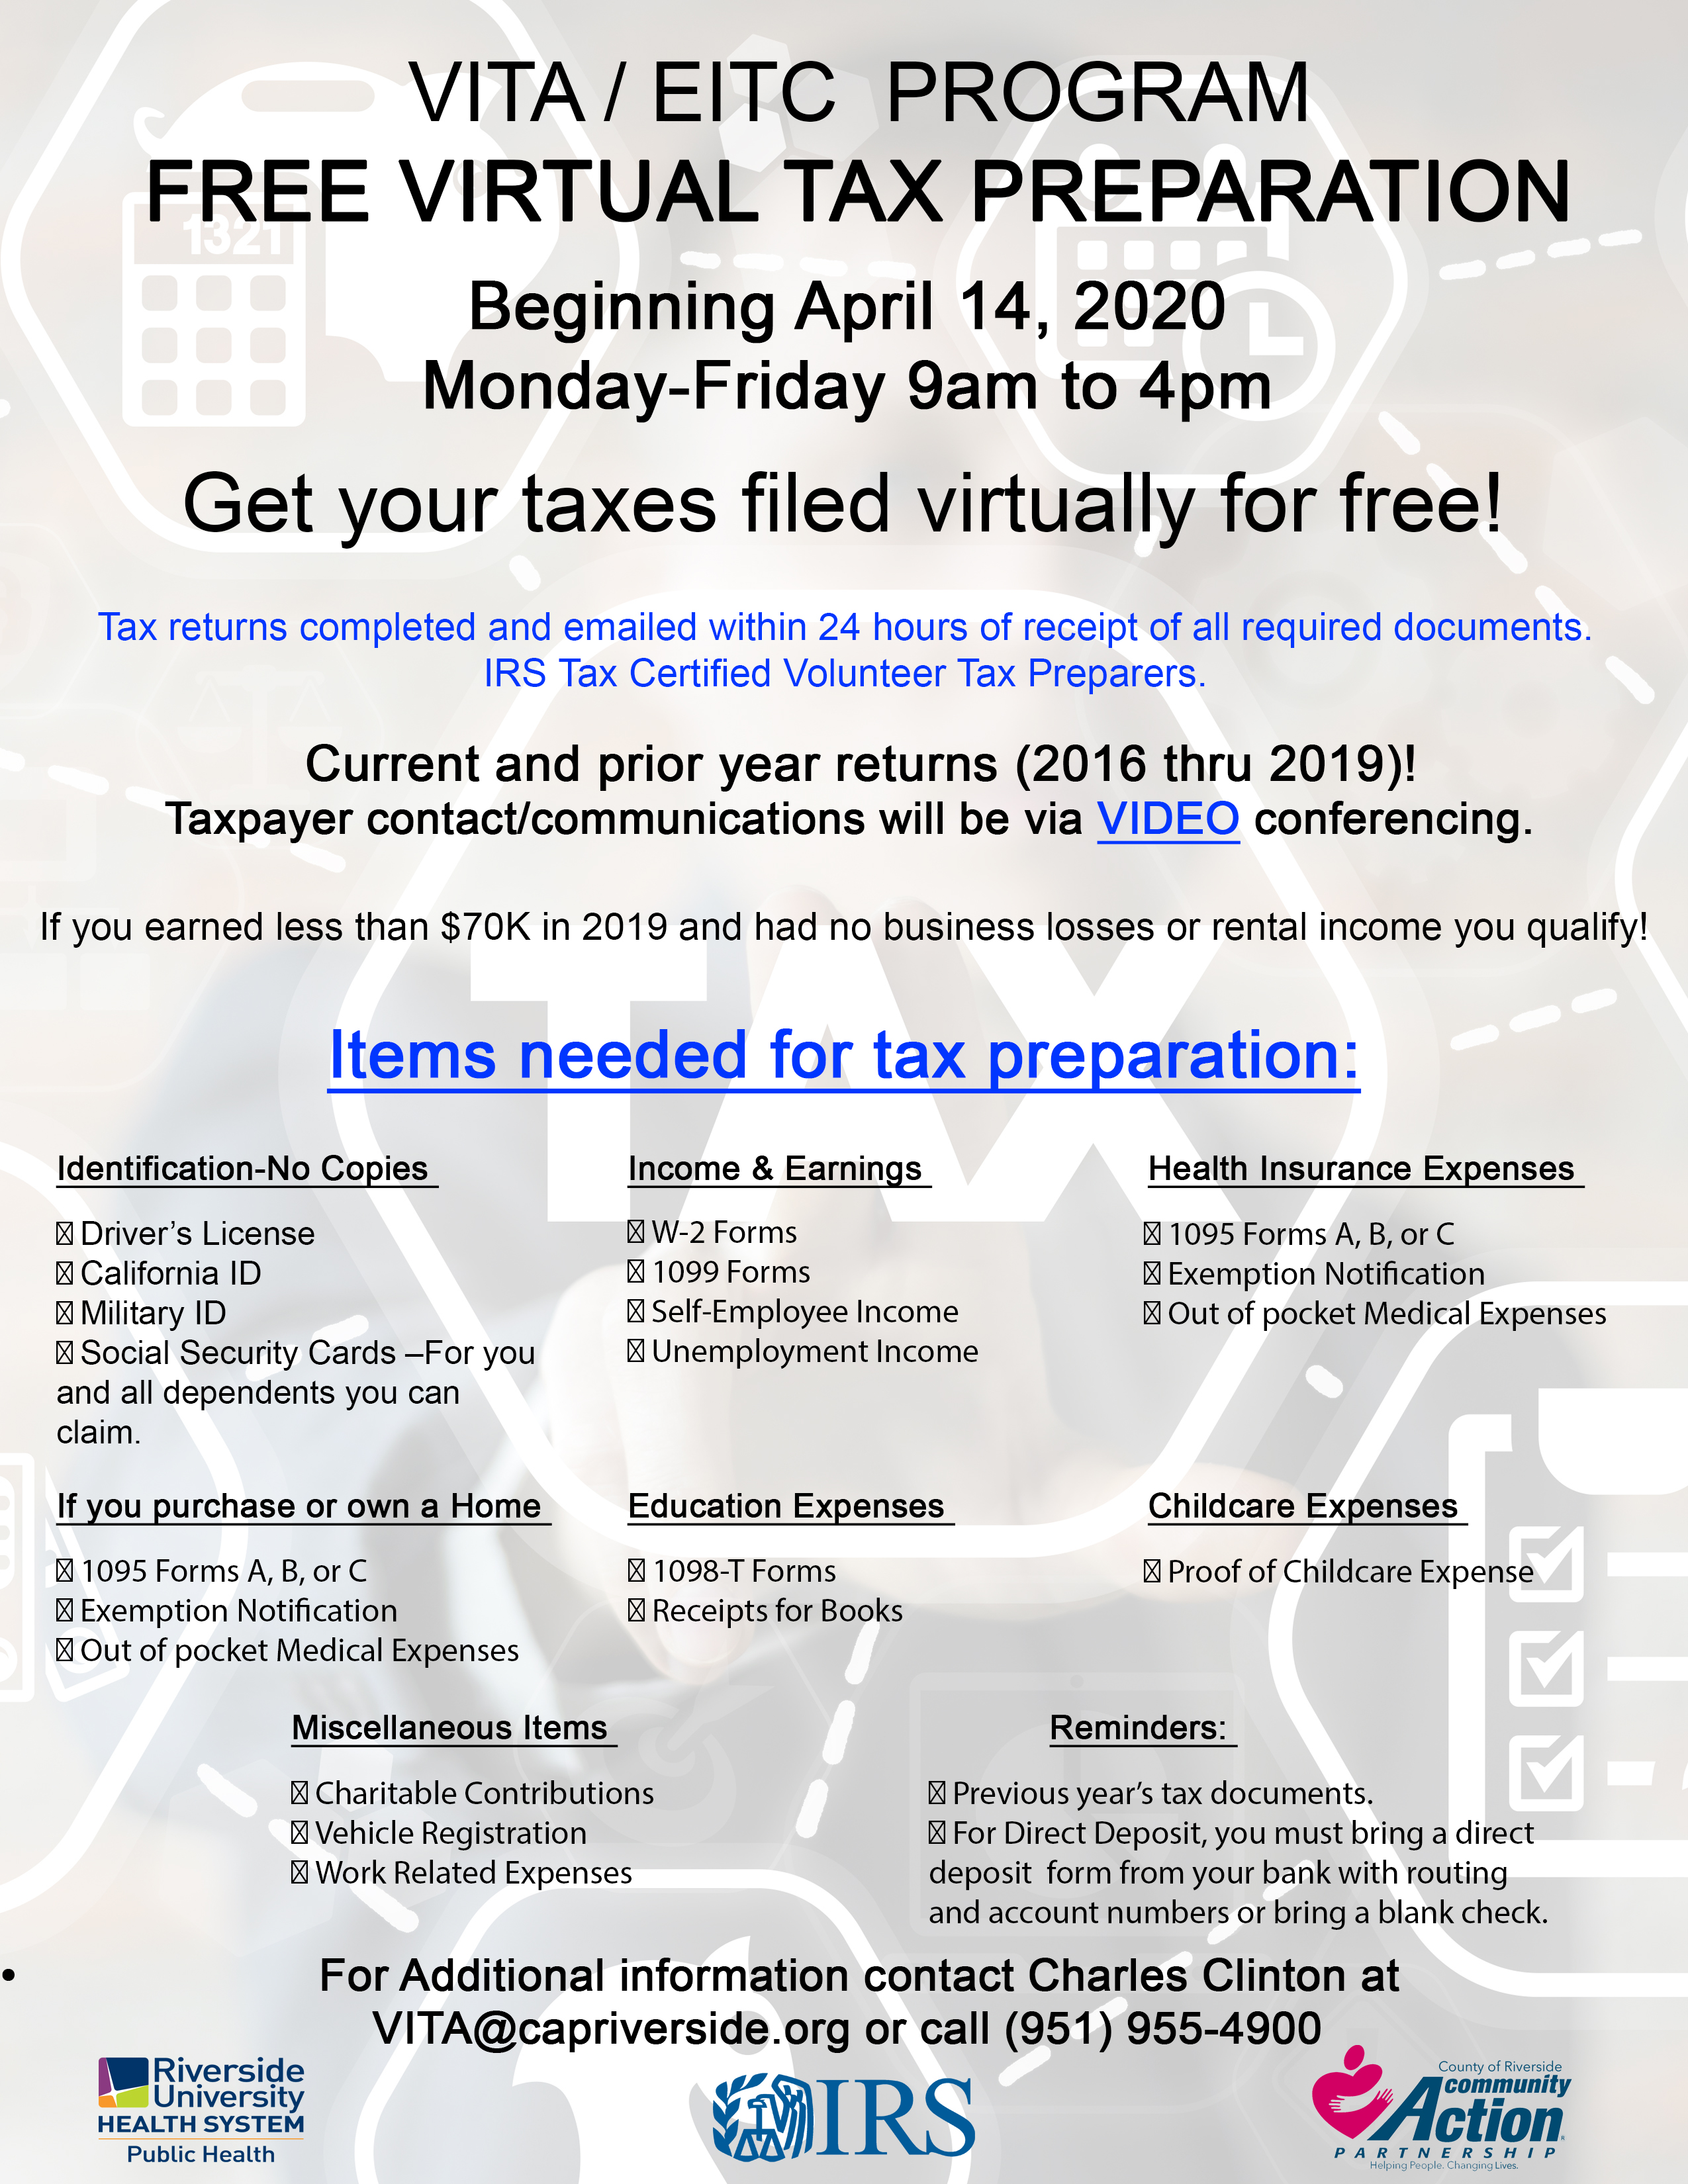 MSJC Events - Free Virtual Tax Preparation